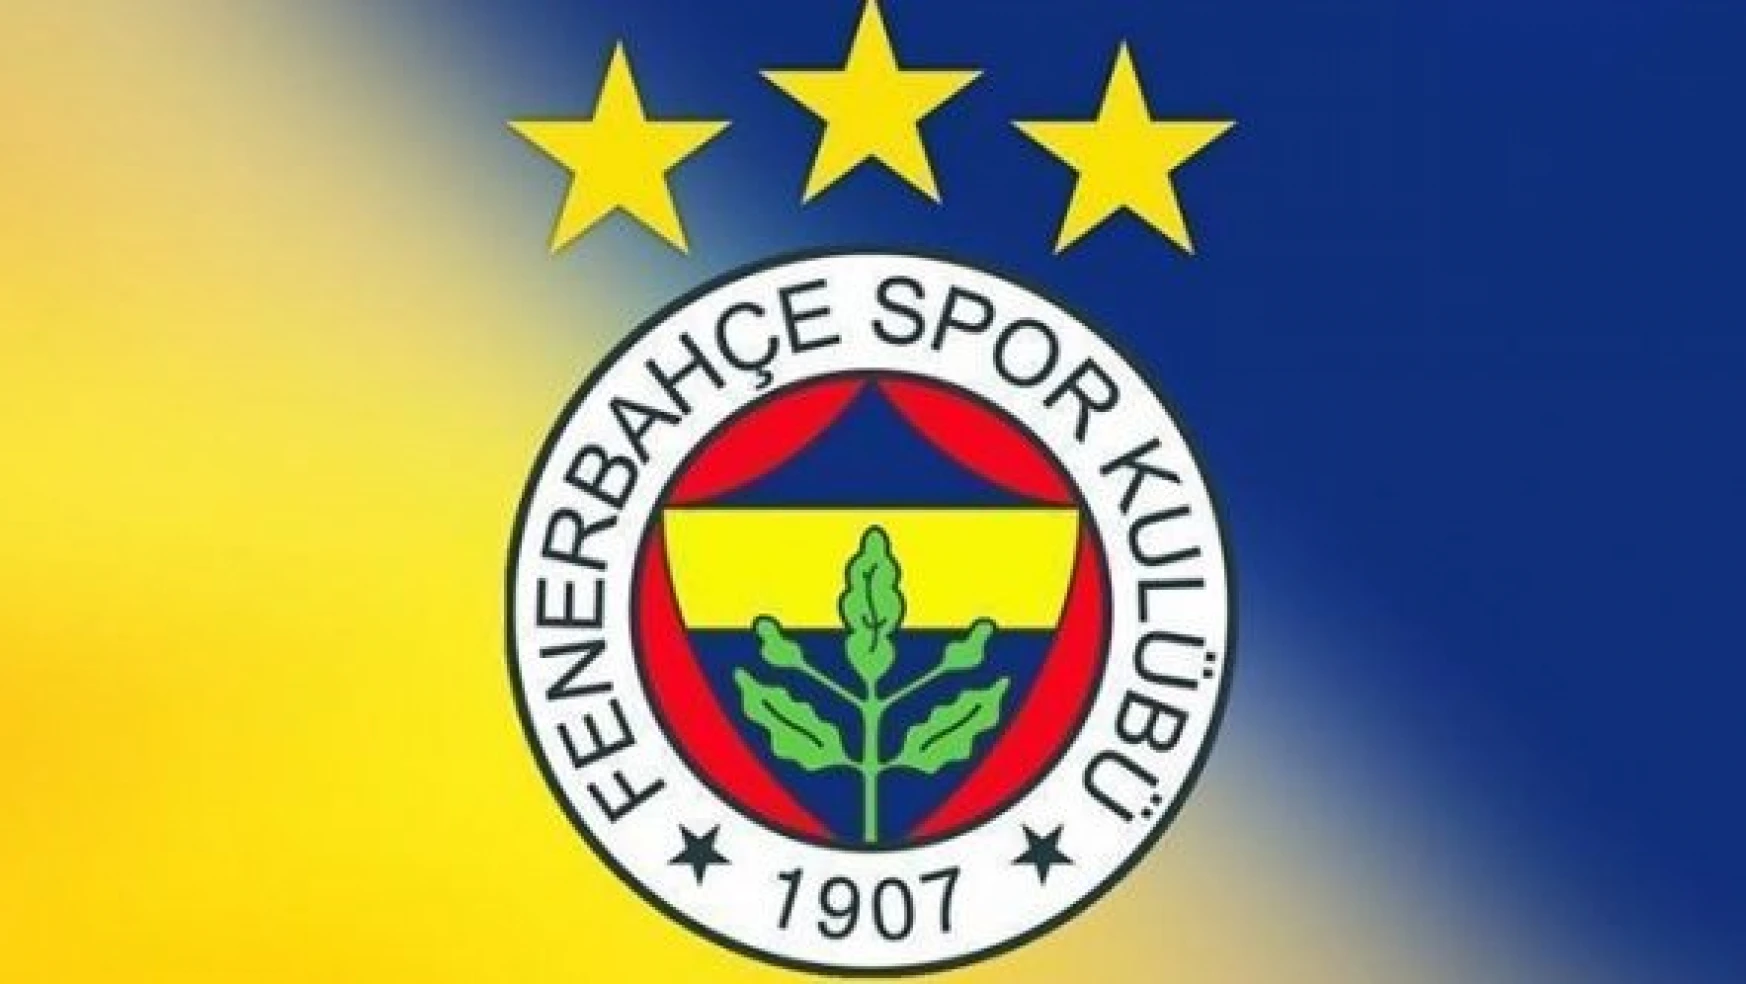 Fenerbahçe'den hazımsızlık kokan açıklamalar